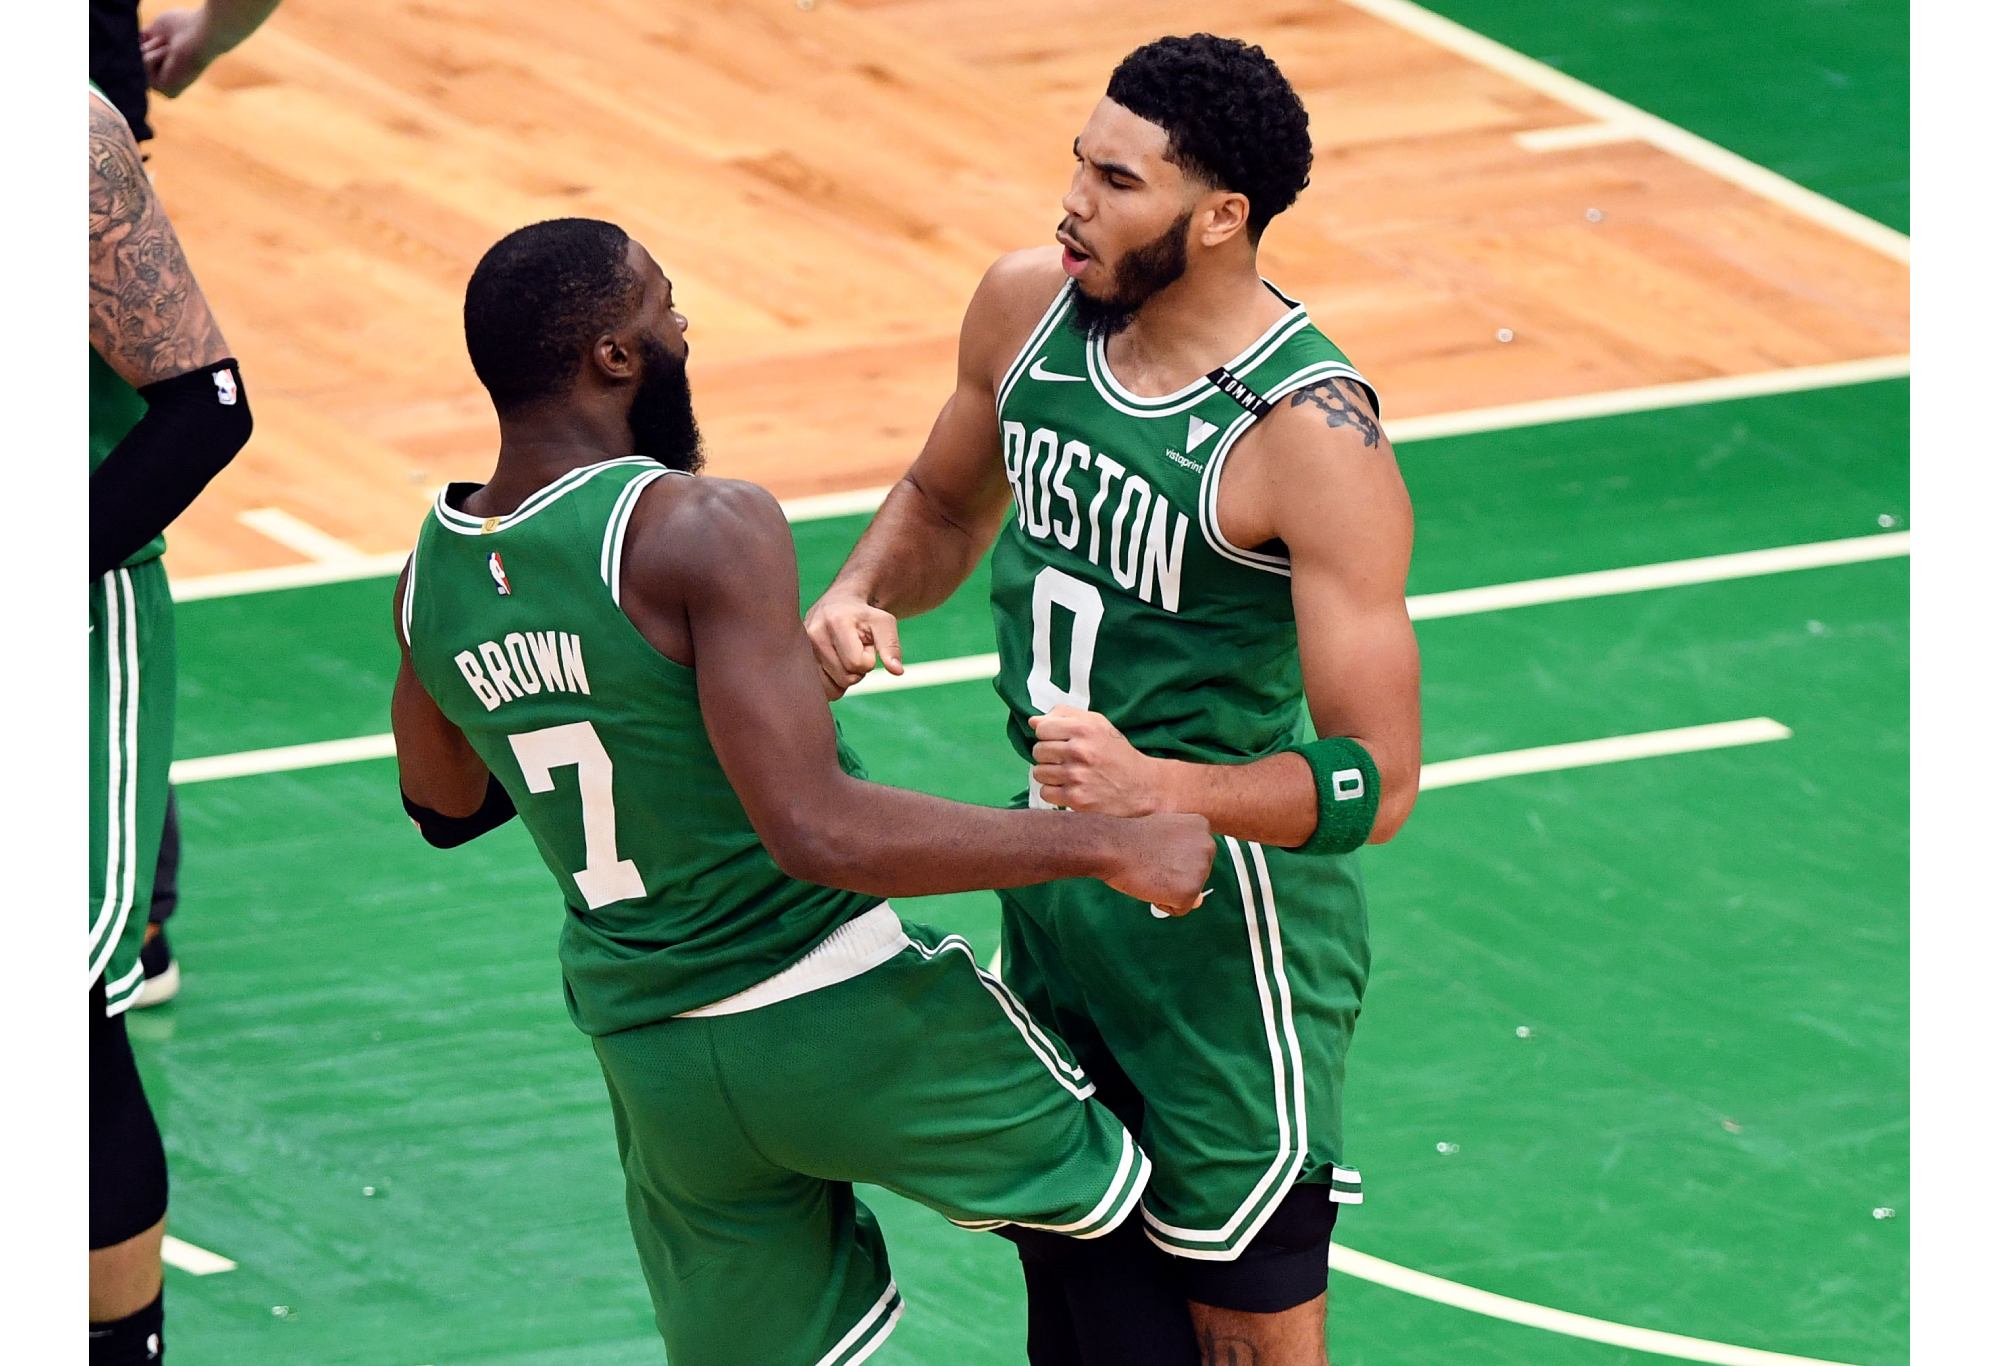 Tatum dan Brown bisa menjadi Stockton dan Malone baru dengan Celtics tampak seperti tim yang hampir